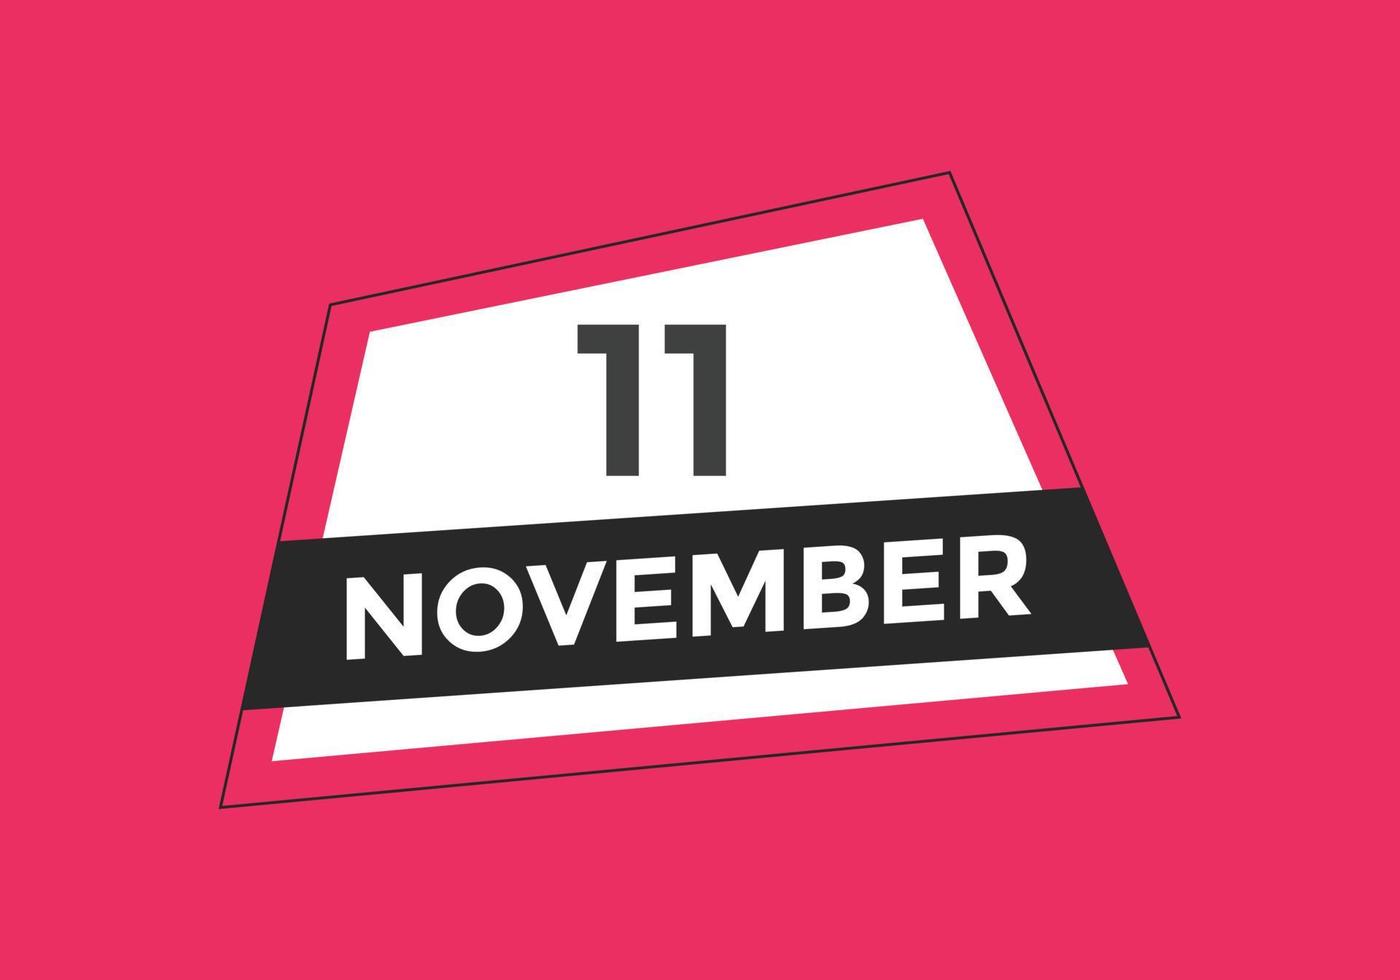 Recordatorio del calendario del 11 de noviembre. Plantilla de icono de calendario diario del 11 de noviembre. plantilla de diseño de icono de calendario 11 de noviembre. ilustración vectorial vector